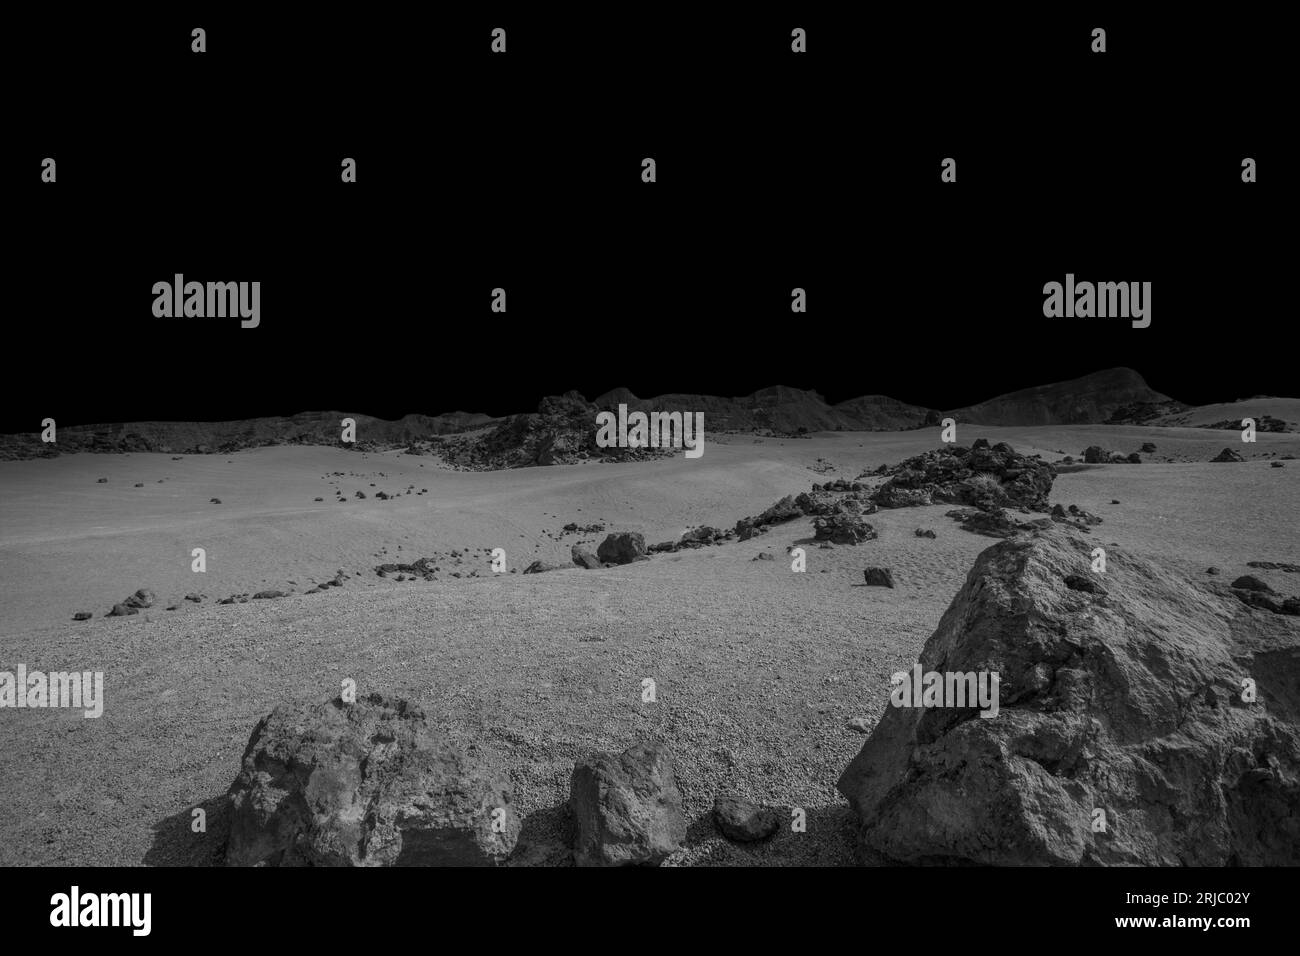 Paisaje del desierto blanco y negro del planeta Marte Foto de stock